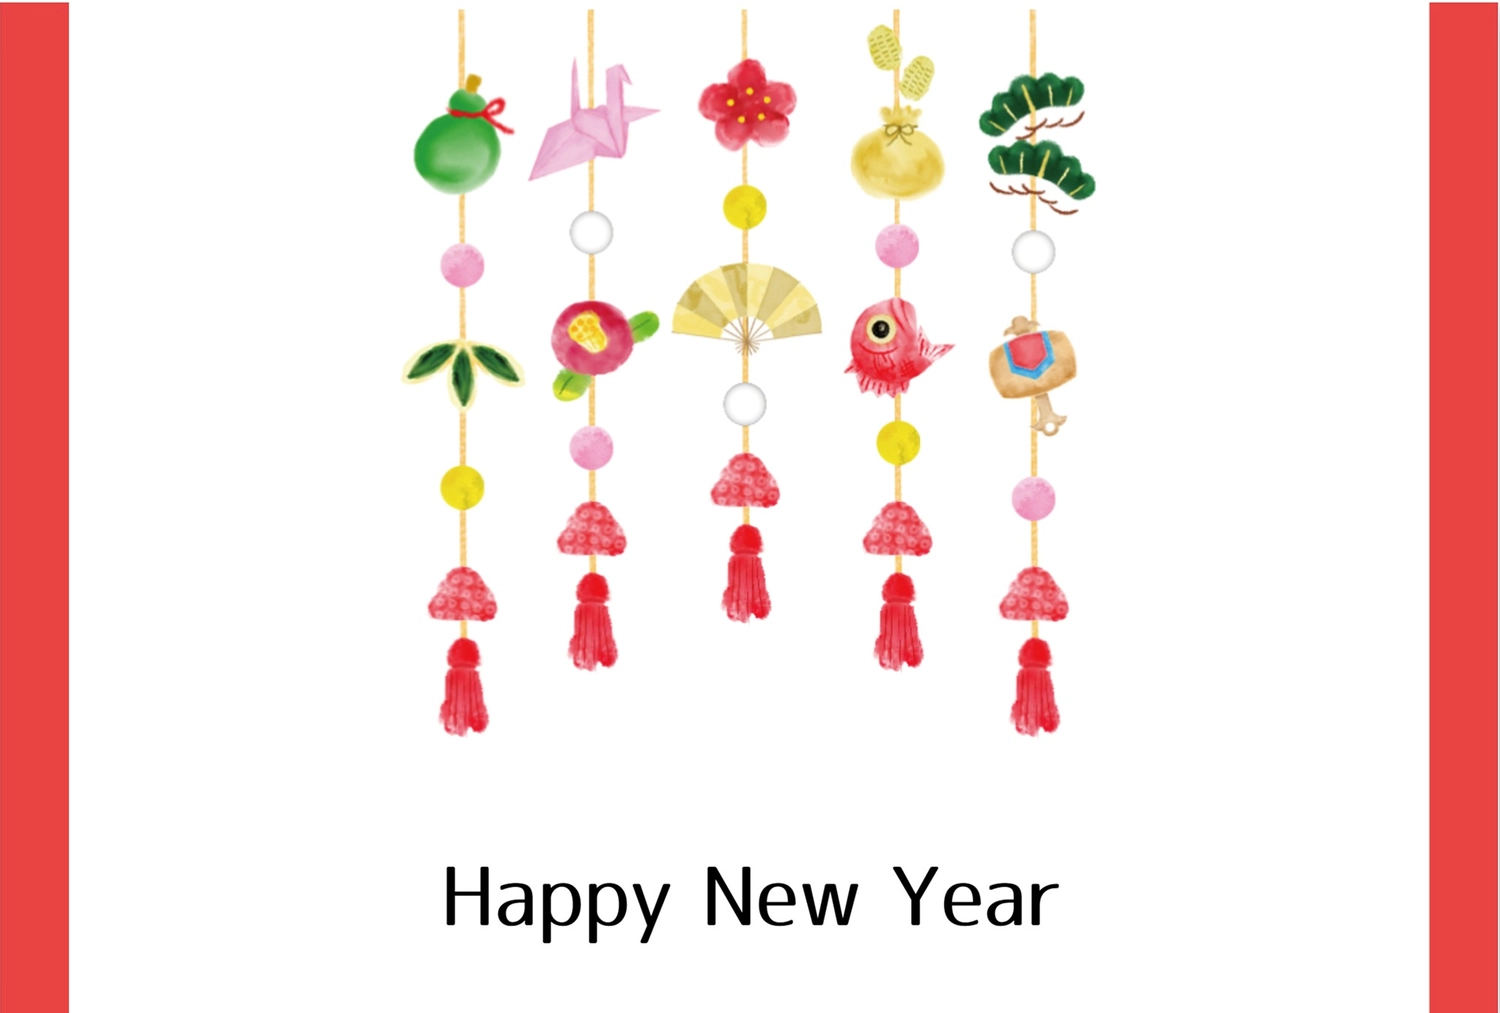 正月飾りの年賀状, 도미, 吊るし飾り, 여백, 새해 카드 템플릿